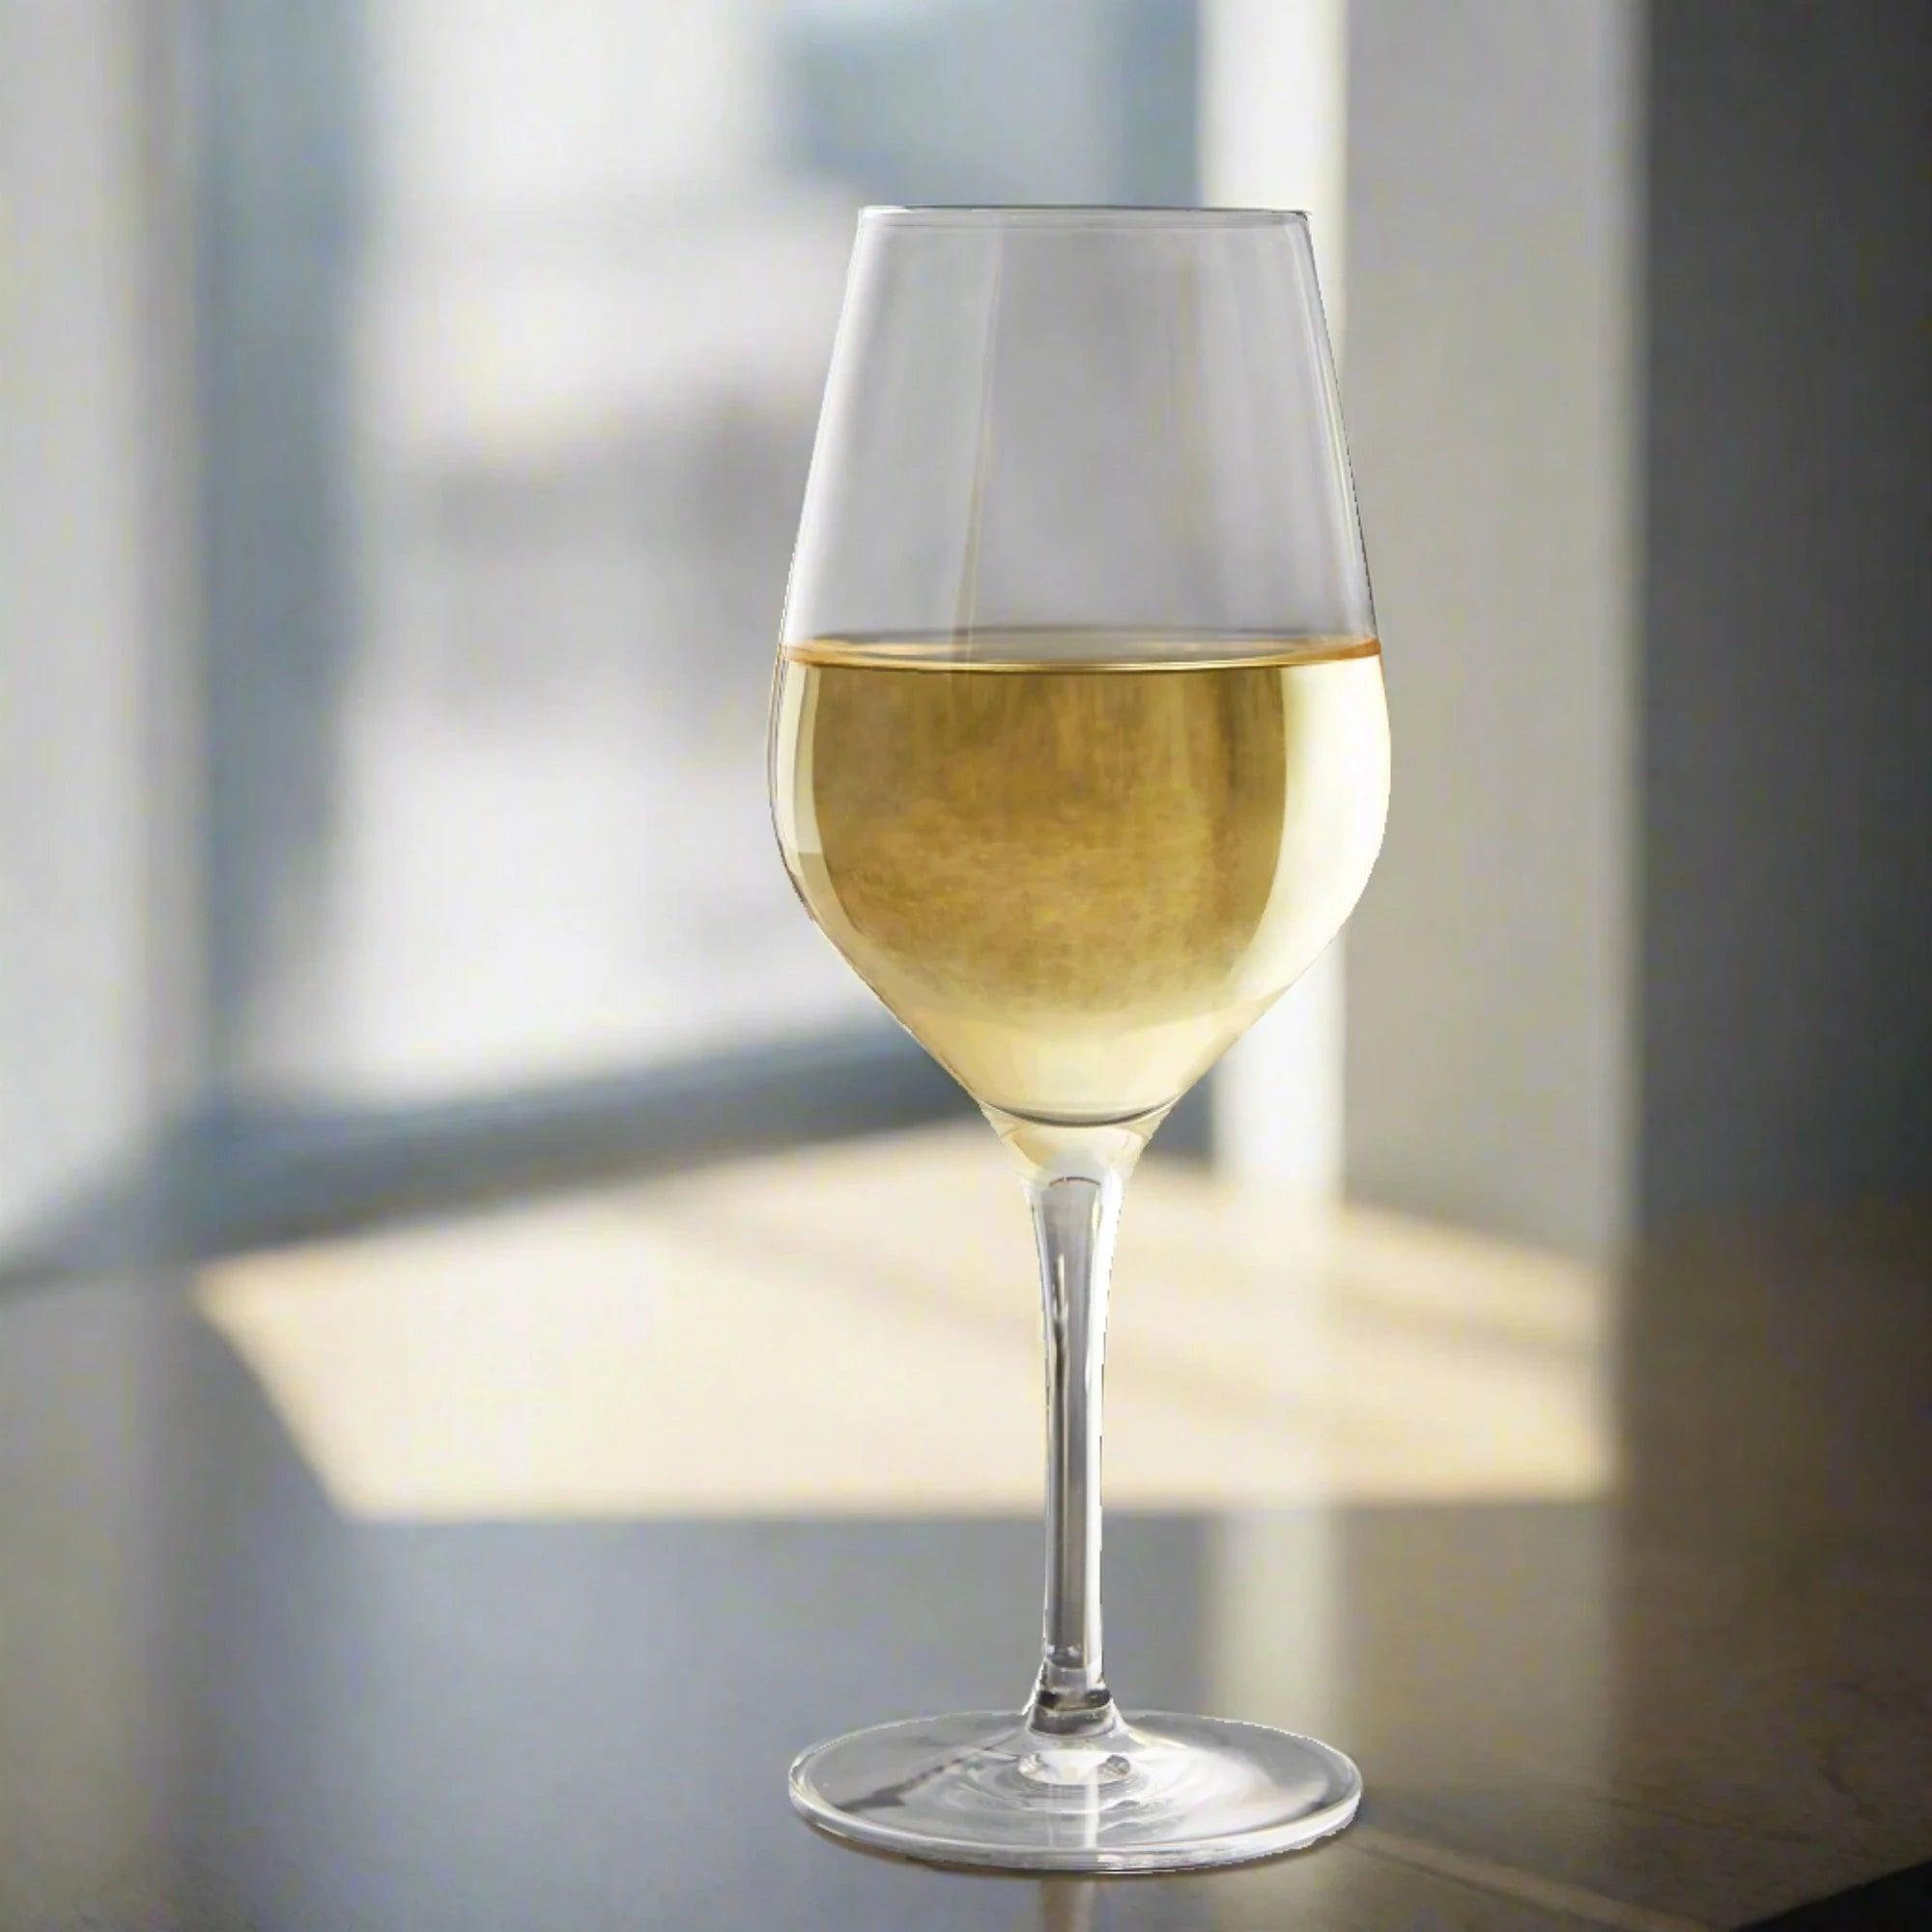 Stolzle Exquisit White Wine Glasses 350ml - Set of 6